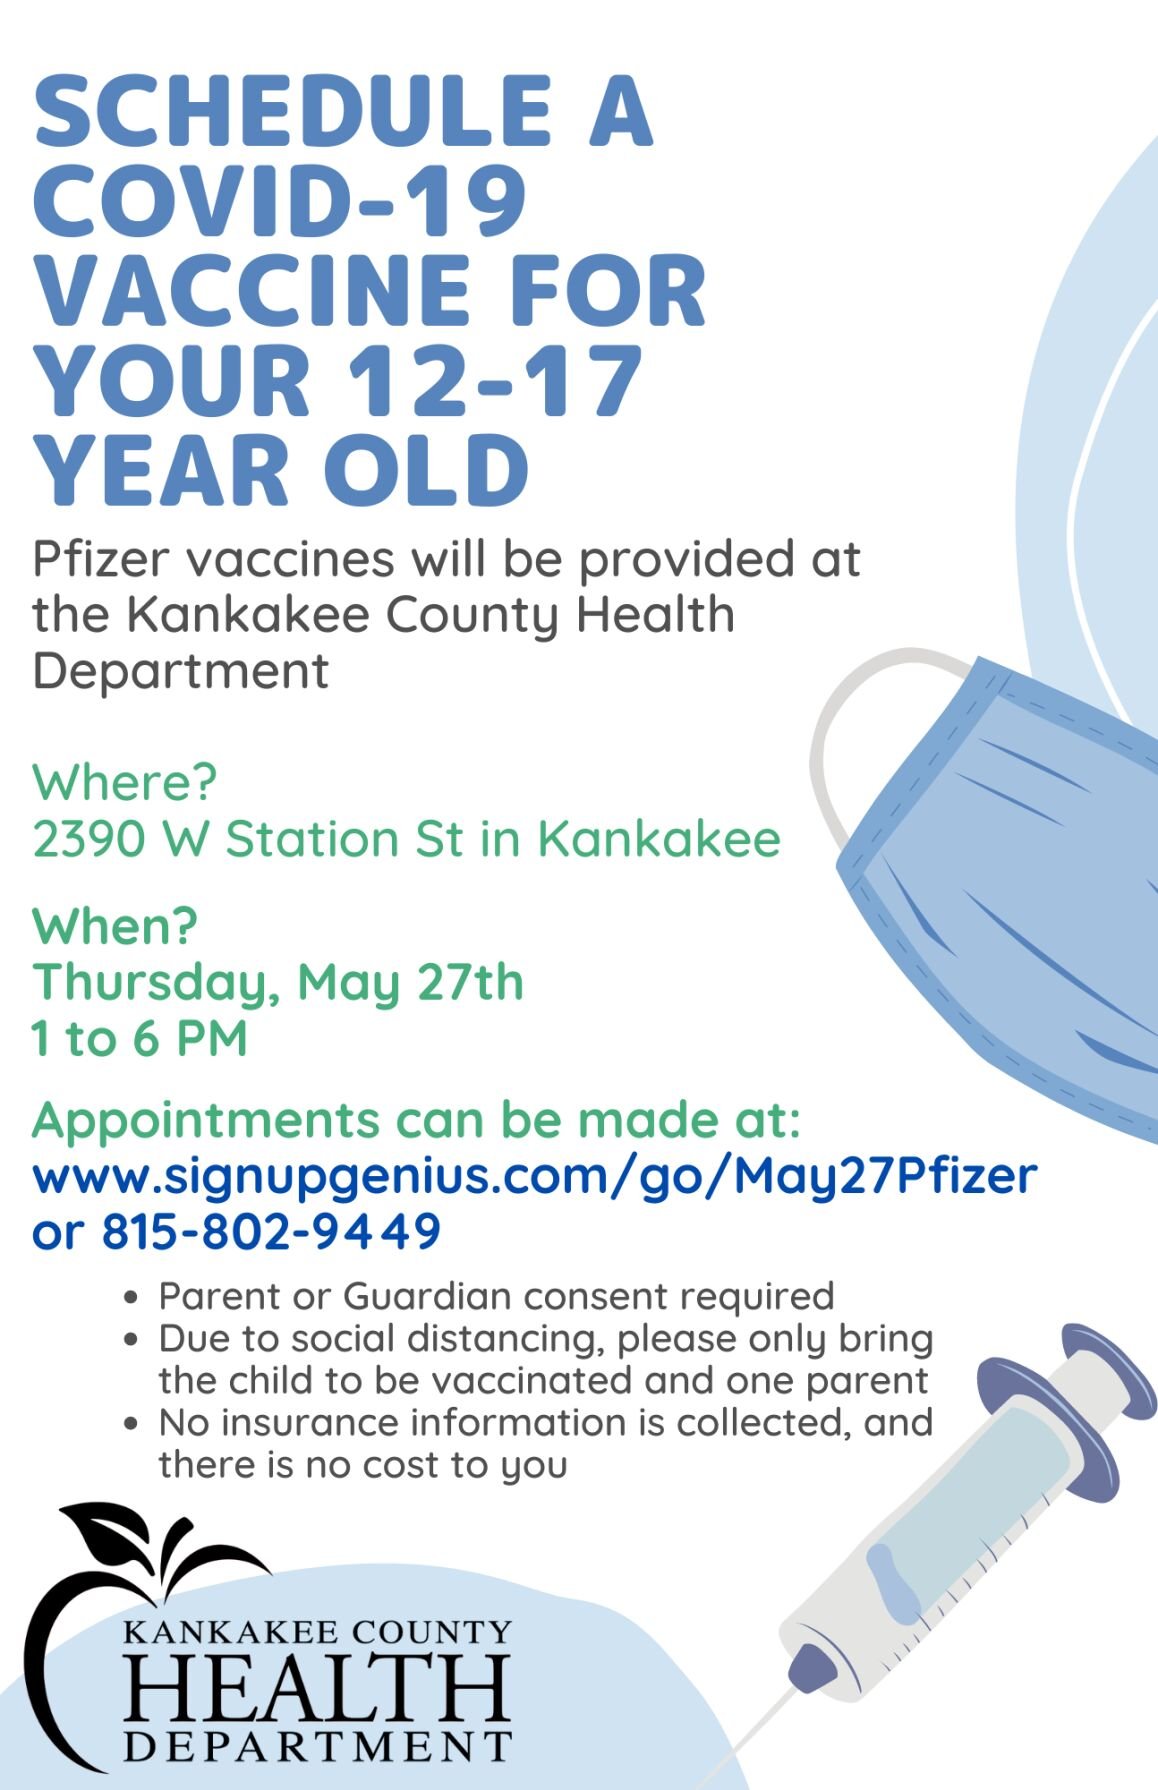 Kankakee County Health Department Vaccinating Kids 12-17 May 27 Coronavirus Daily-journalcom